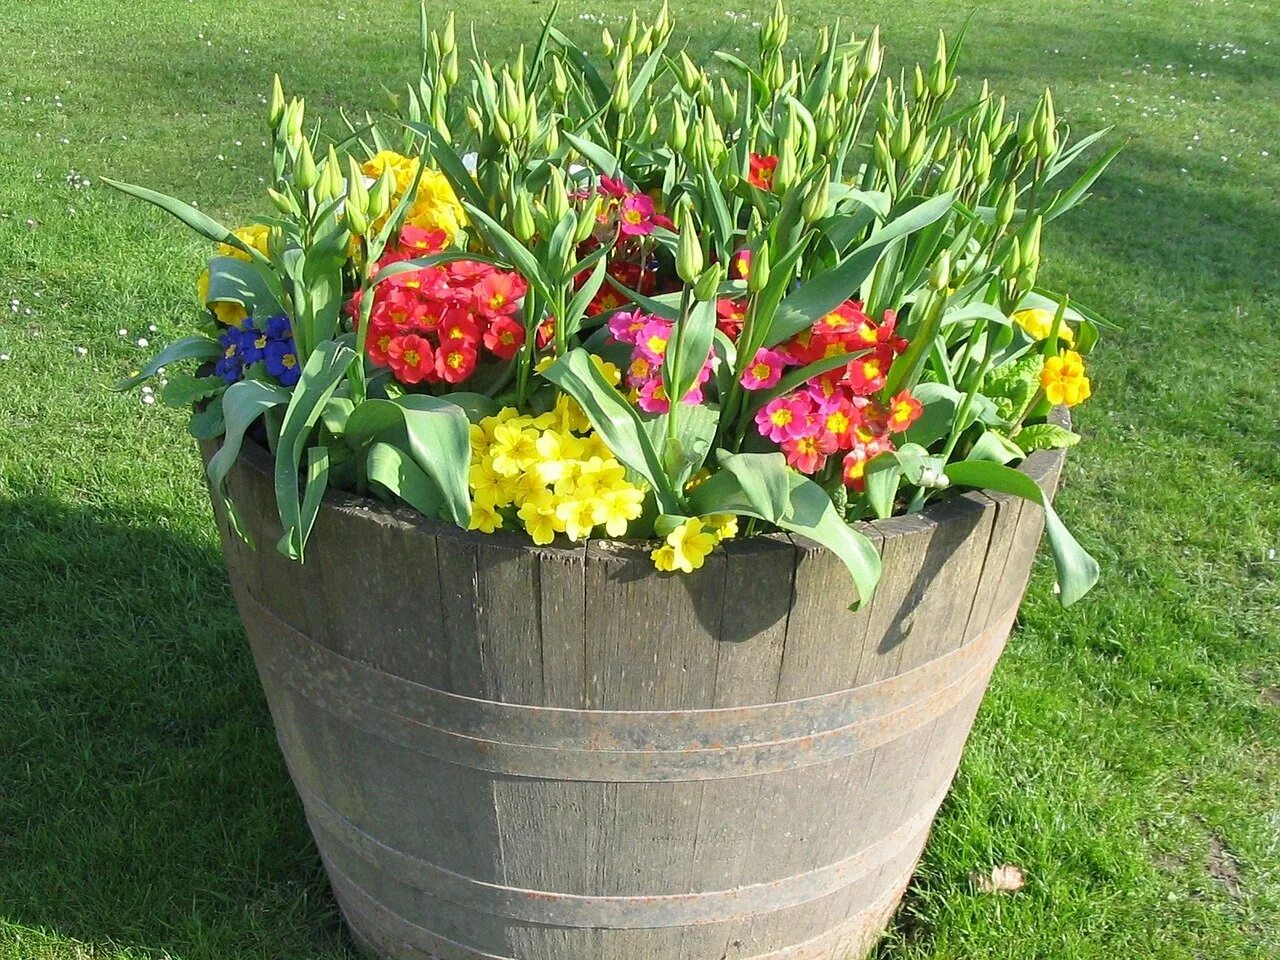 Посадить цветок в большой горшок. Цветочные композиции в горшках для сада. Тюльпаны в горшке. Клумба в горшке. Цветы в горшках на даче.